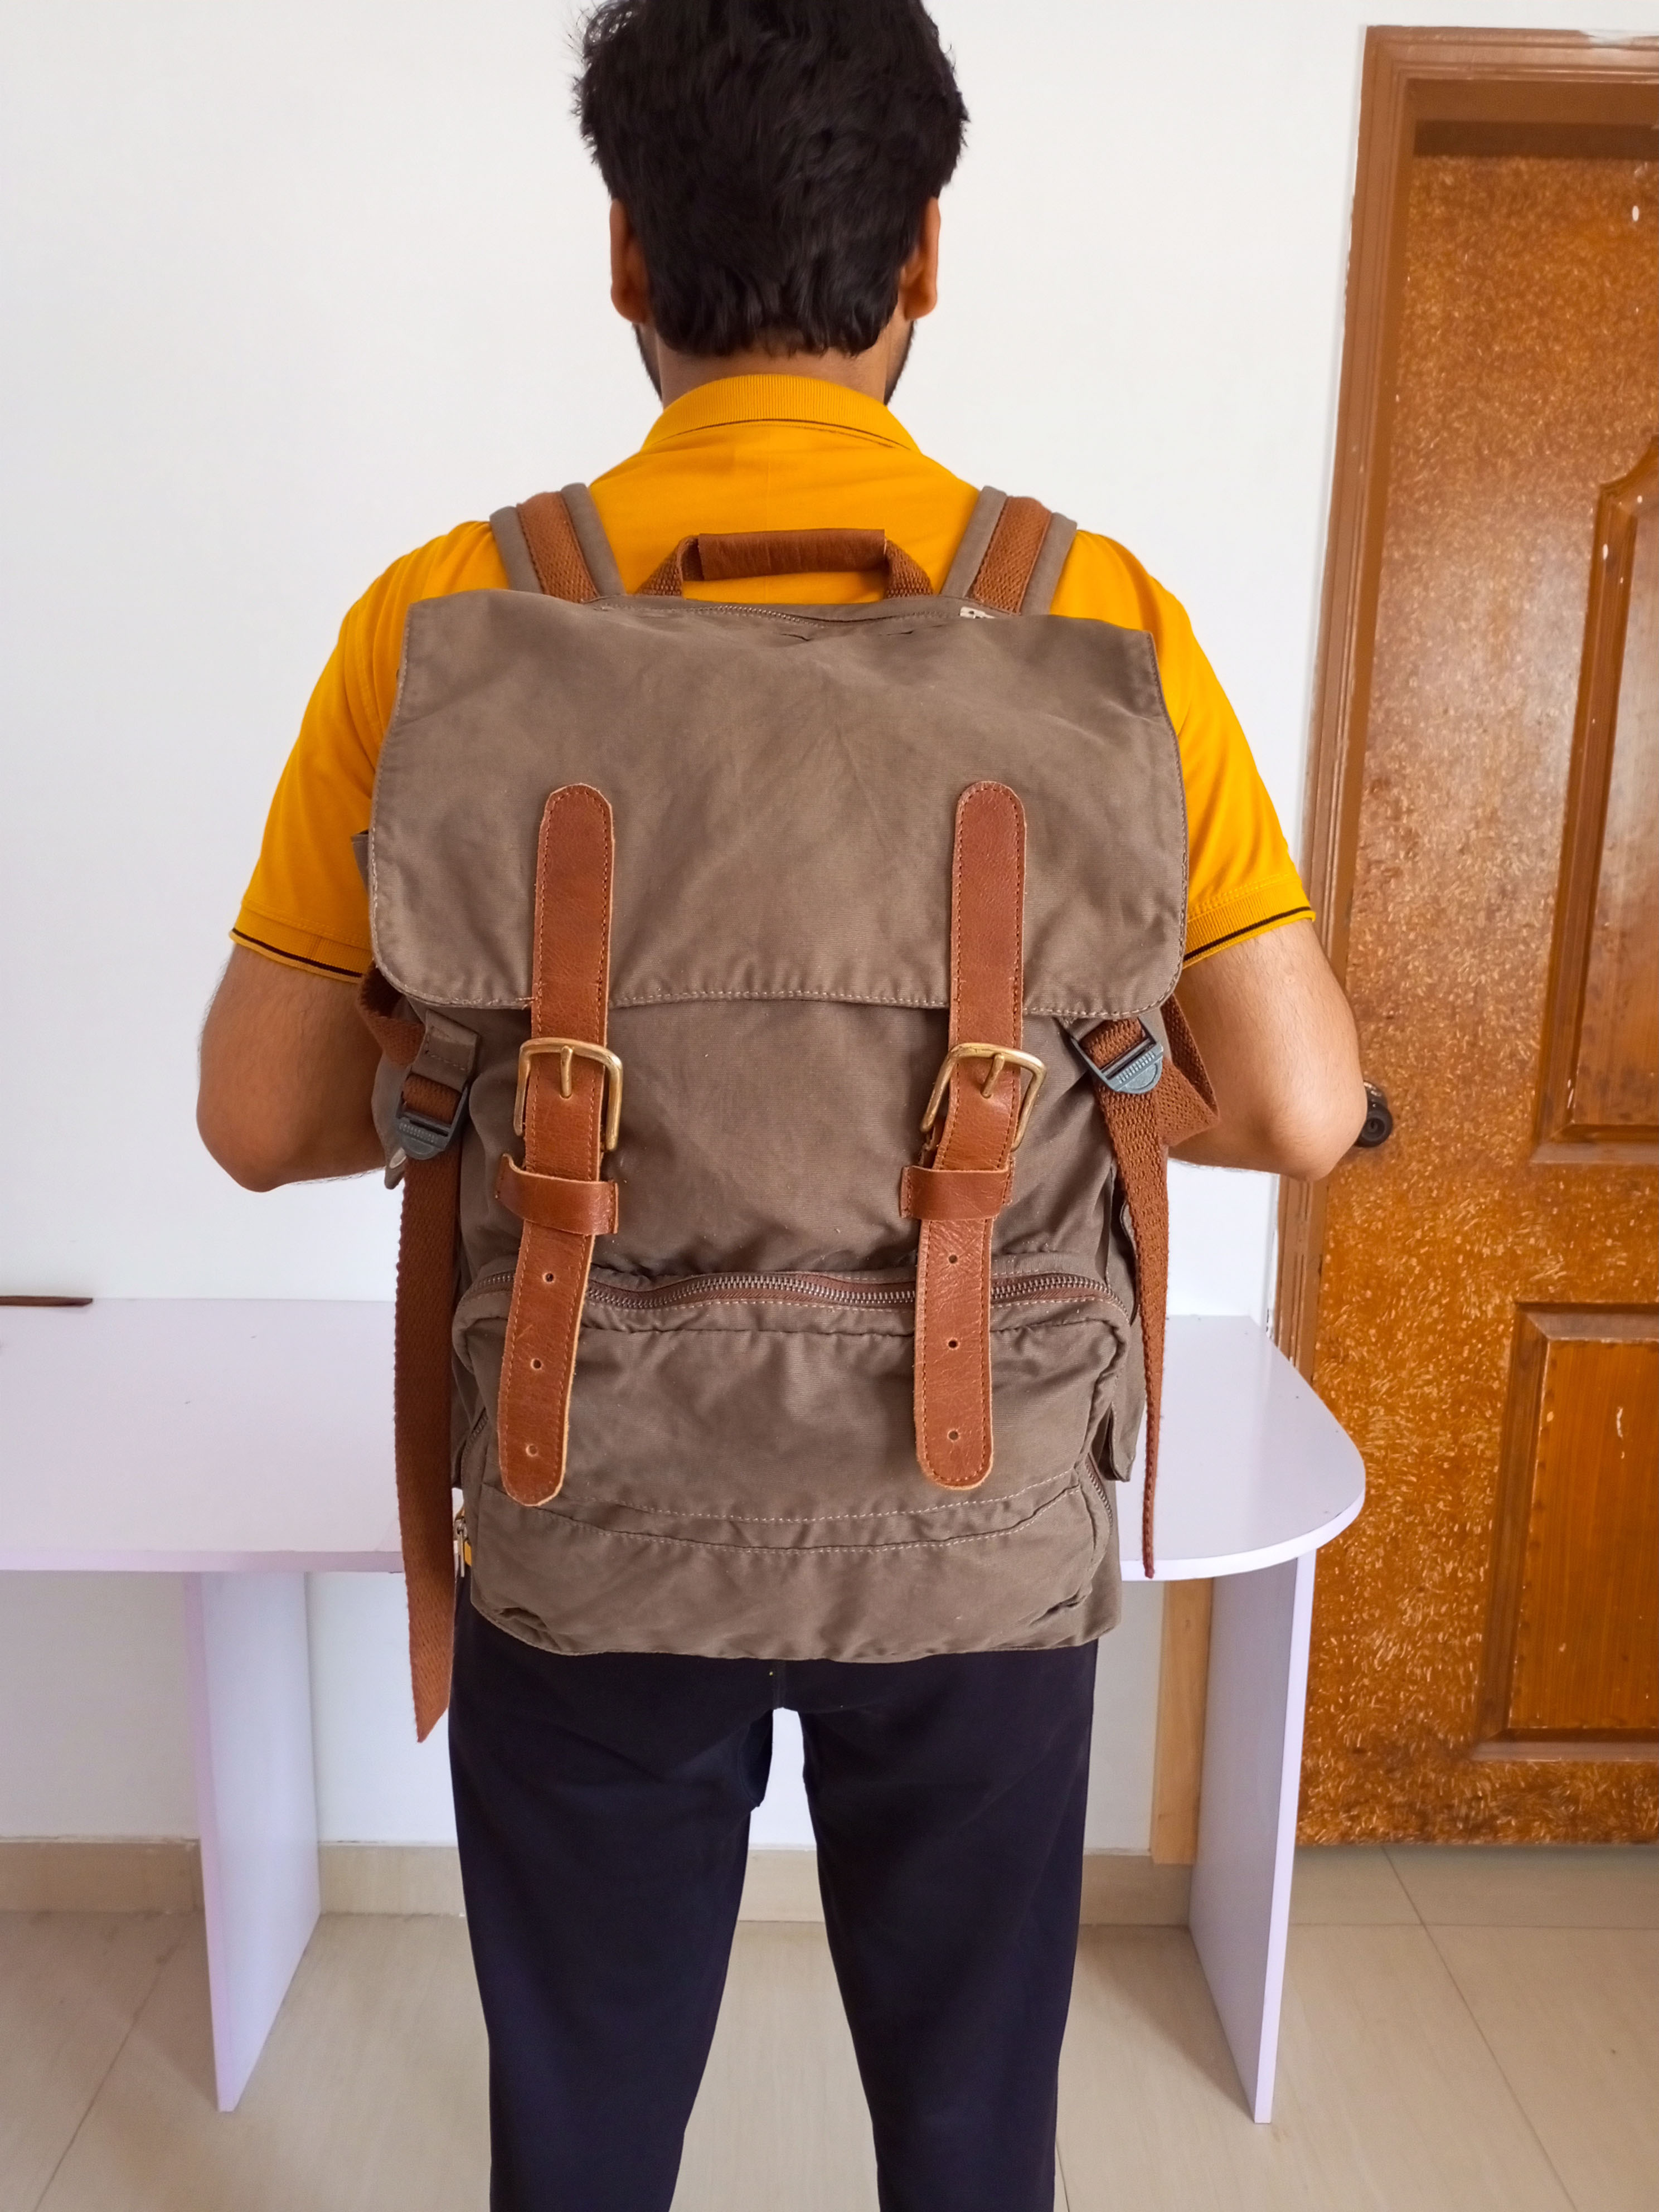 Joel's backpack 4.jpg